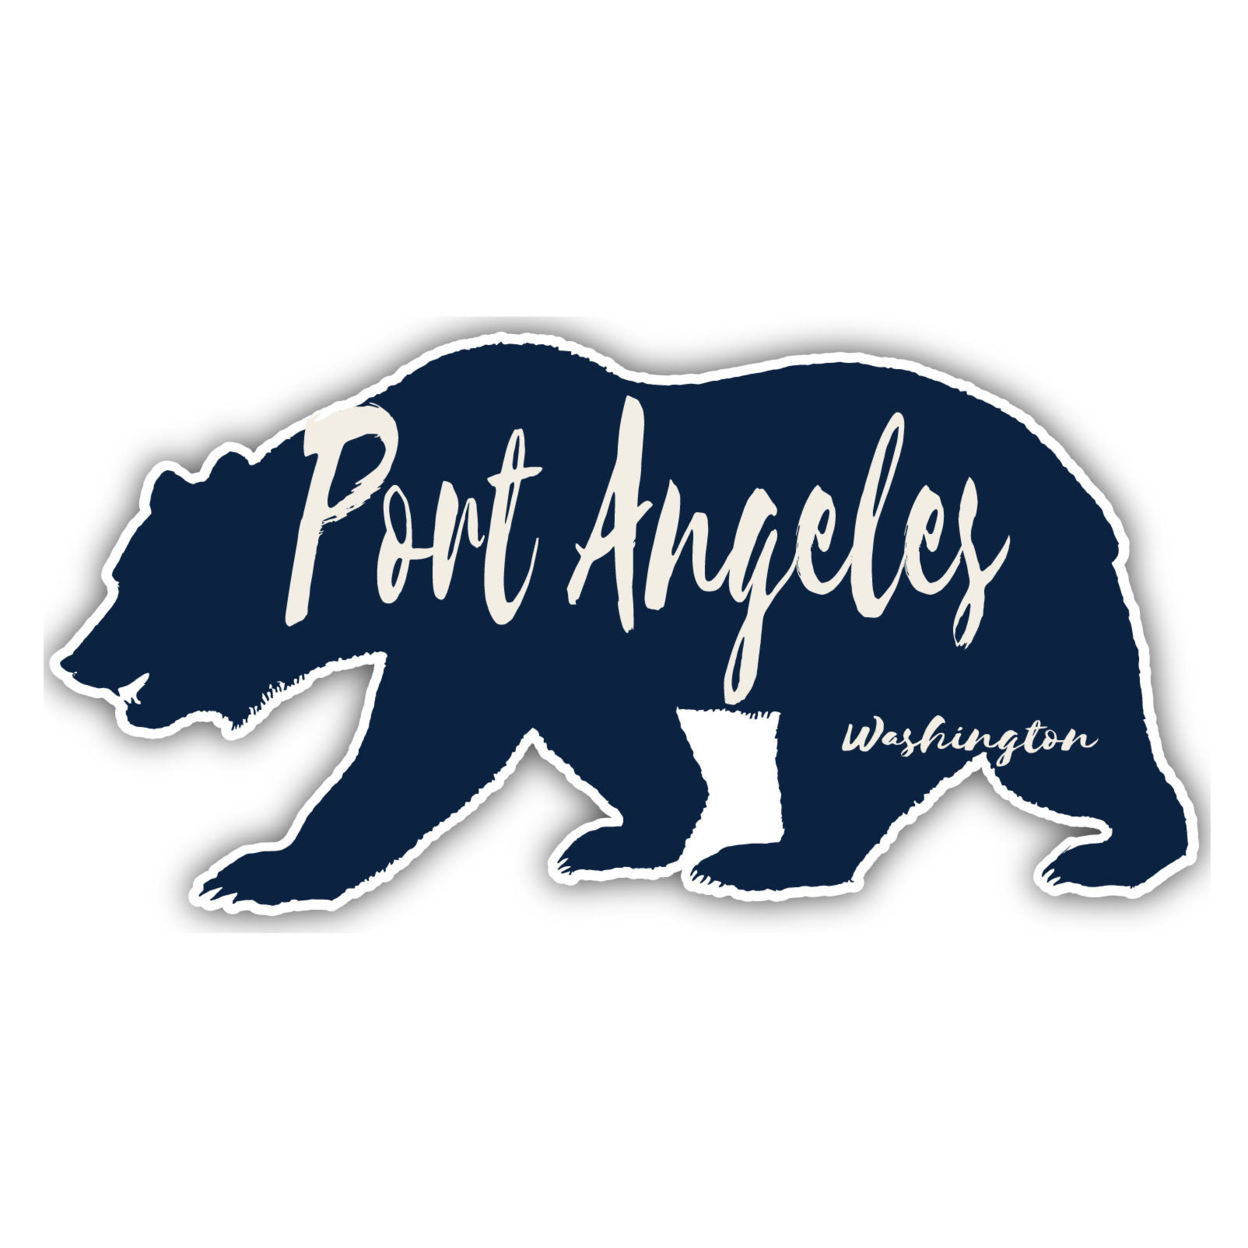 Port Angeles Washington Souvenir Decorative Stickers (Choose Theme And Size) - Single Unit, 2-Inch, Tent